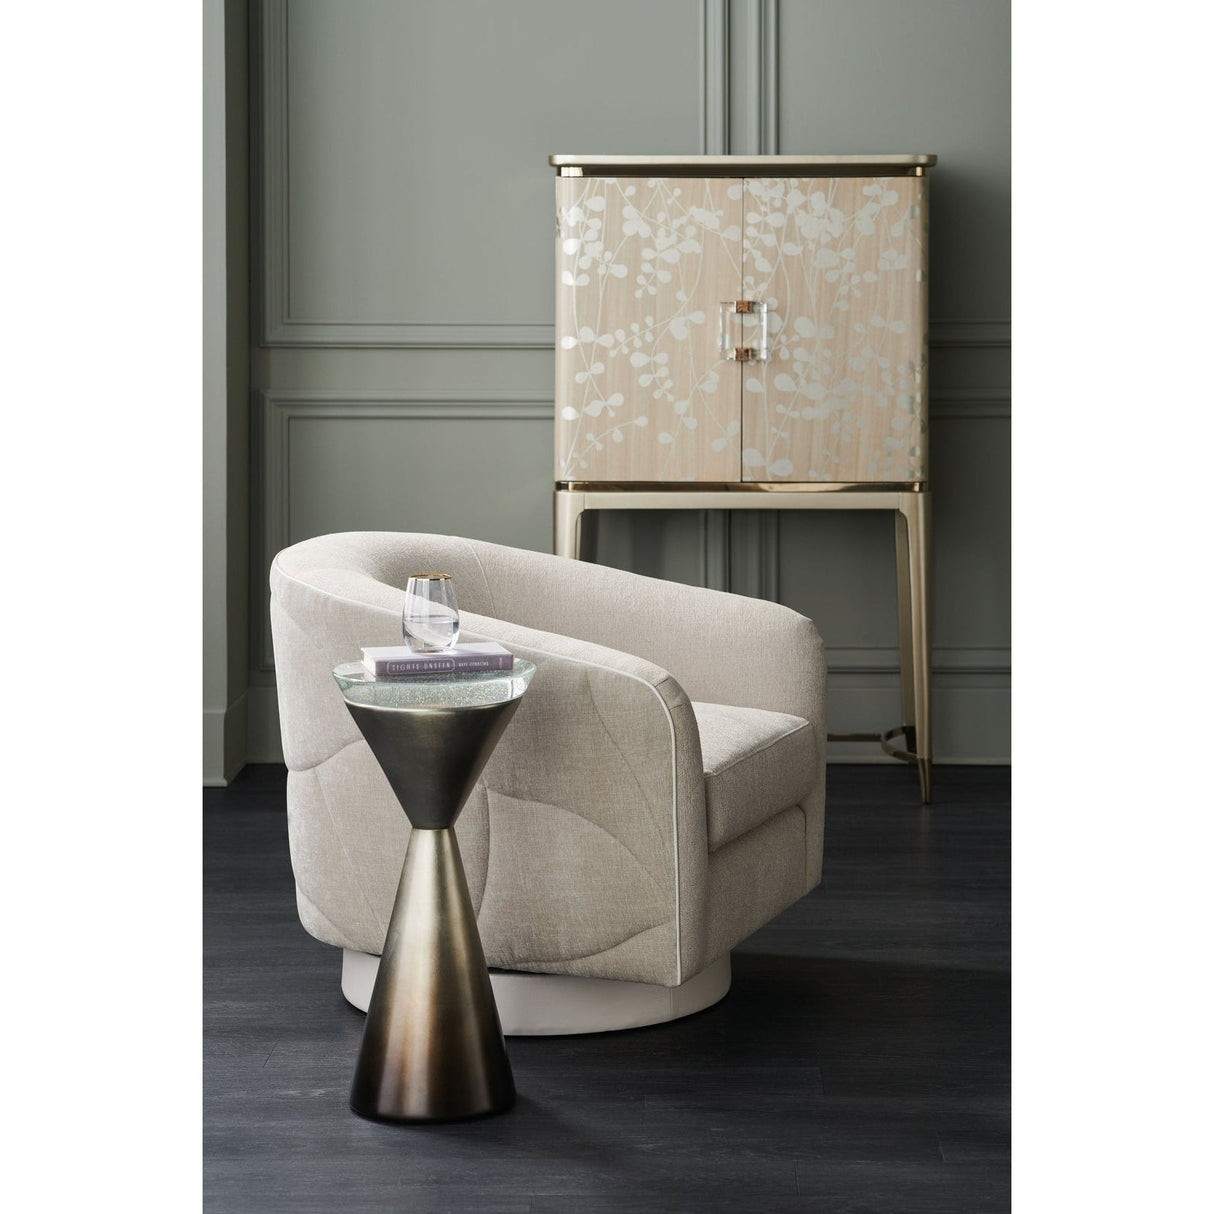 Caracole Spy Glass Side Table - Home Elegance USA